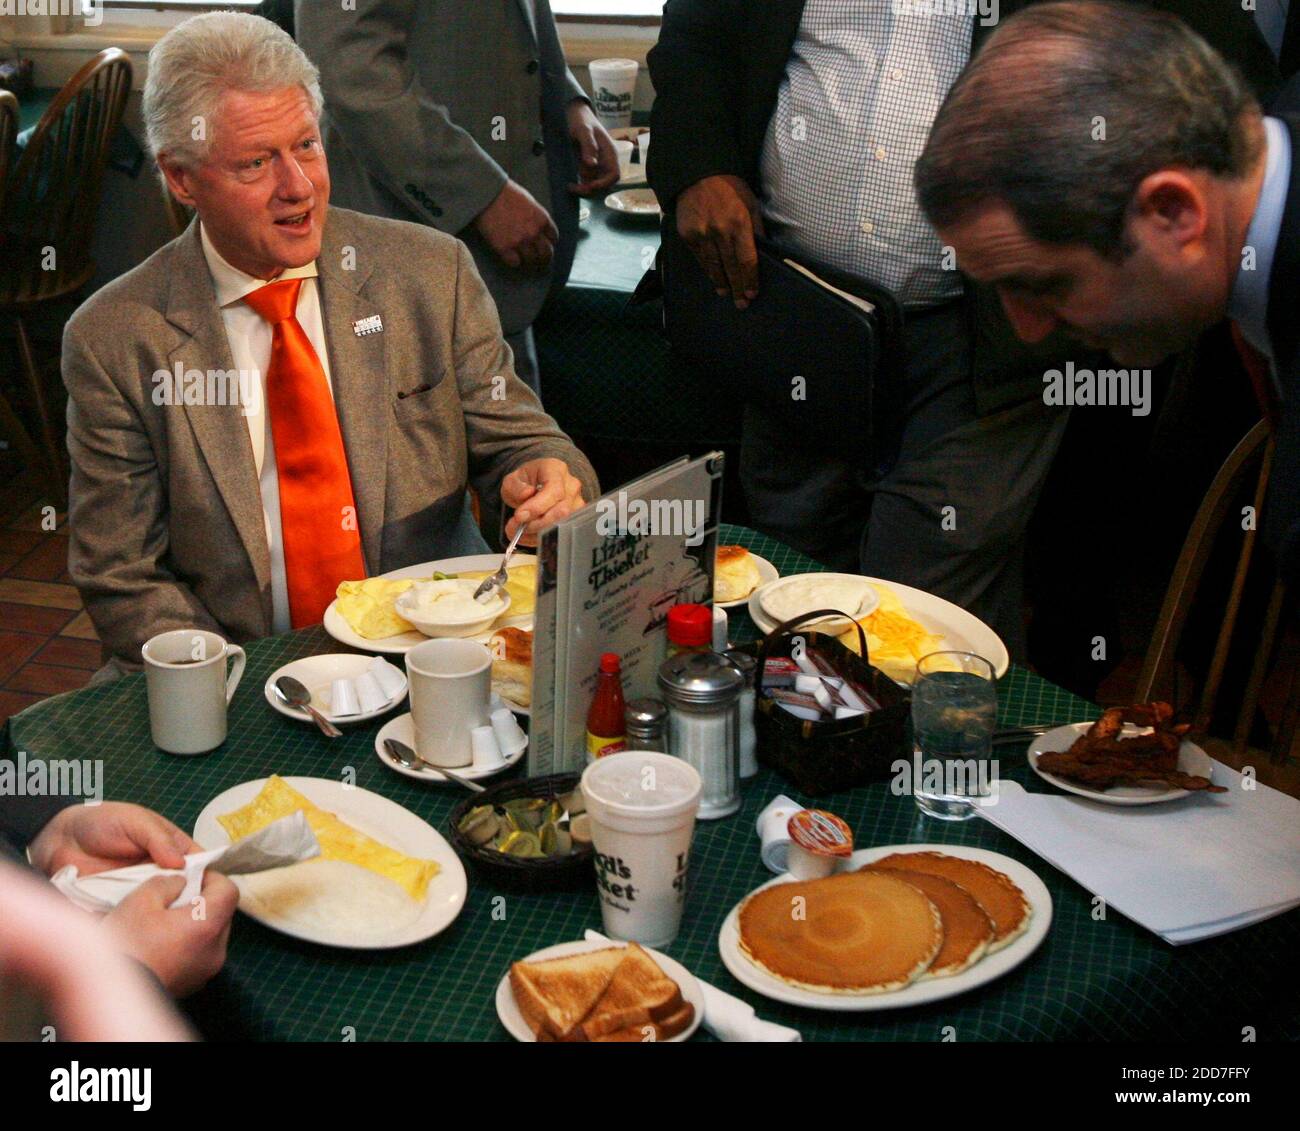 Der ehemalige Präsident Bill Clinton genießt das Frühstück im Lizard's Thicket, wo Clinton am 22. Januar 2008 in Columbia, SC, USA, für seine Frau Hillary kämpfte. Foto von Jeff Blake/The State/MCT/ABACAPRESS.COM Stockfoto